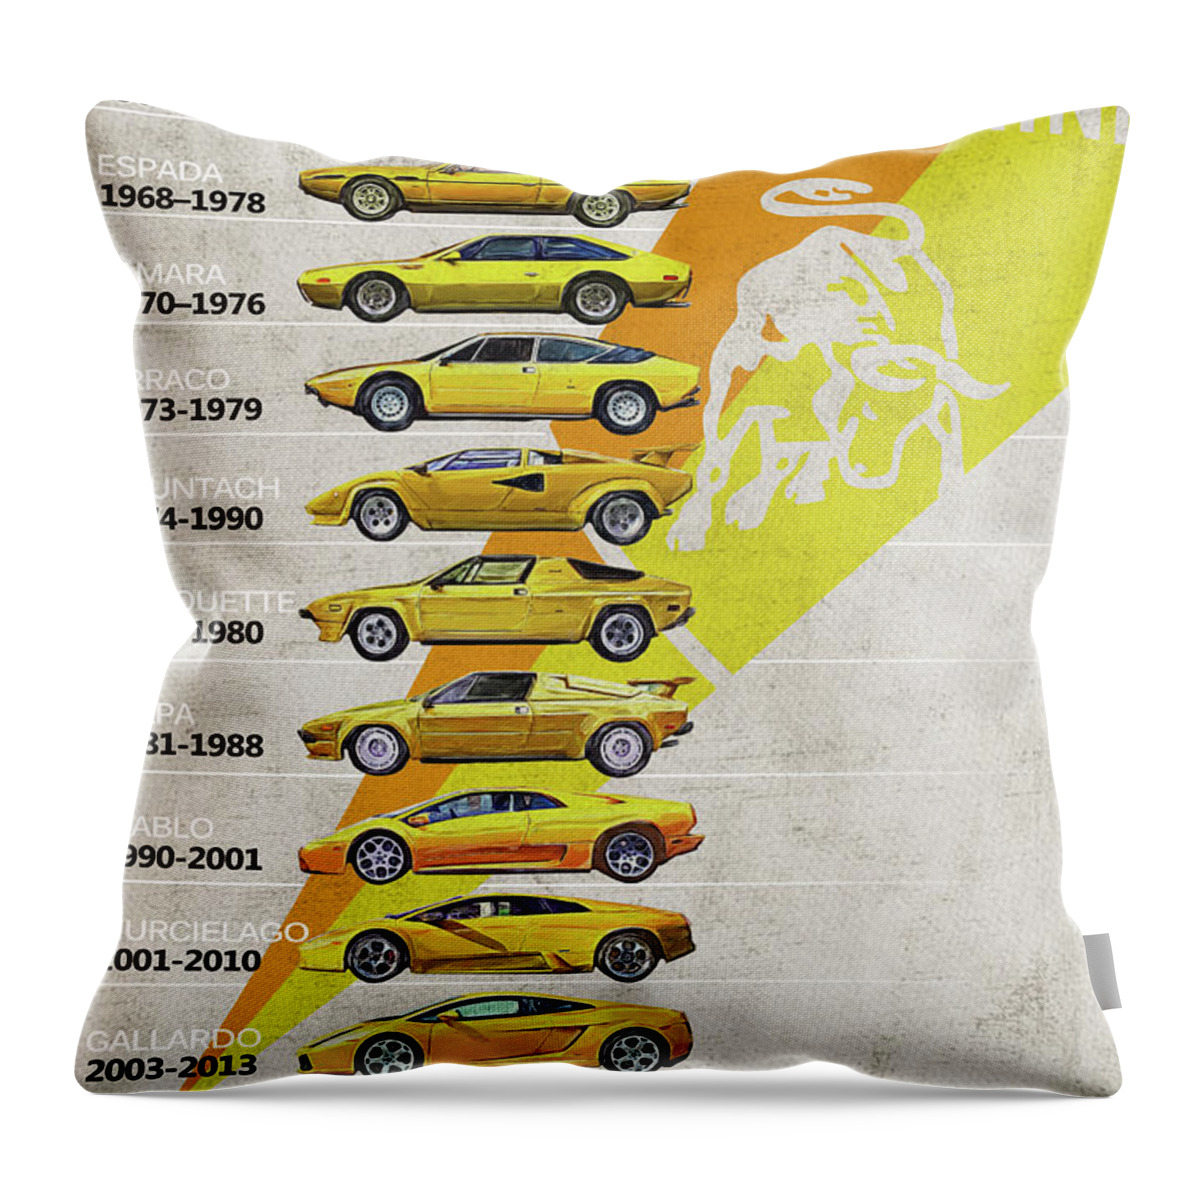 Lamborghini Throw Pillow featuring the digital art Lamborghini Generations - Timeline - History by Yurdaer Bes